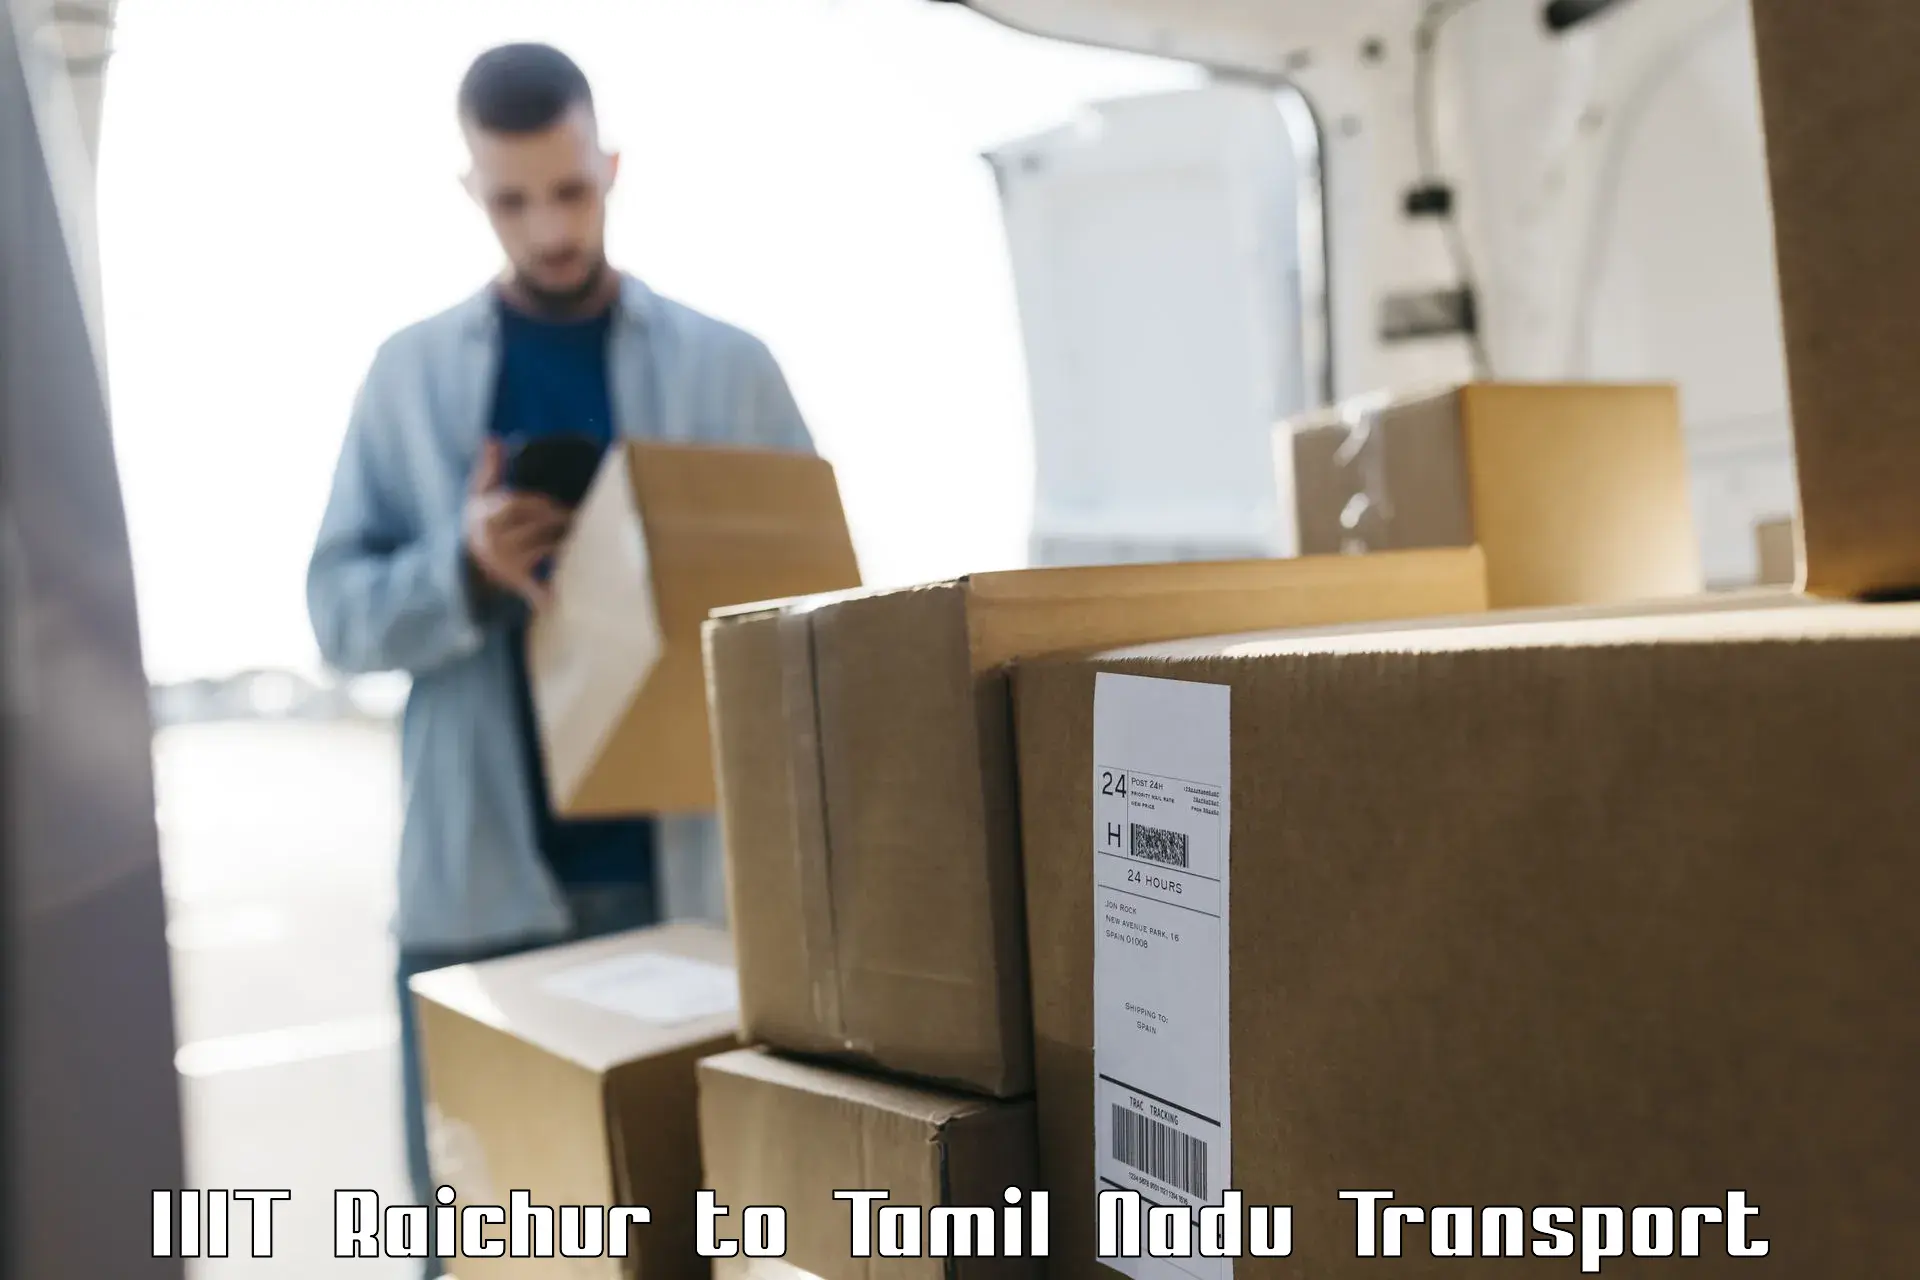 Interstate goods transport IIIT Raichur to Pattukottai